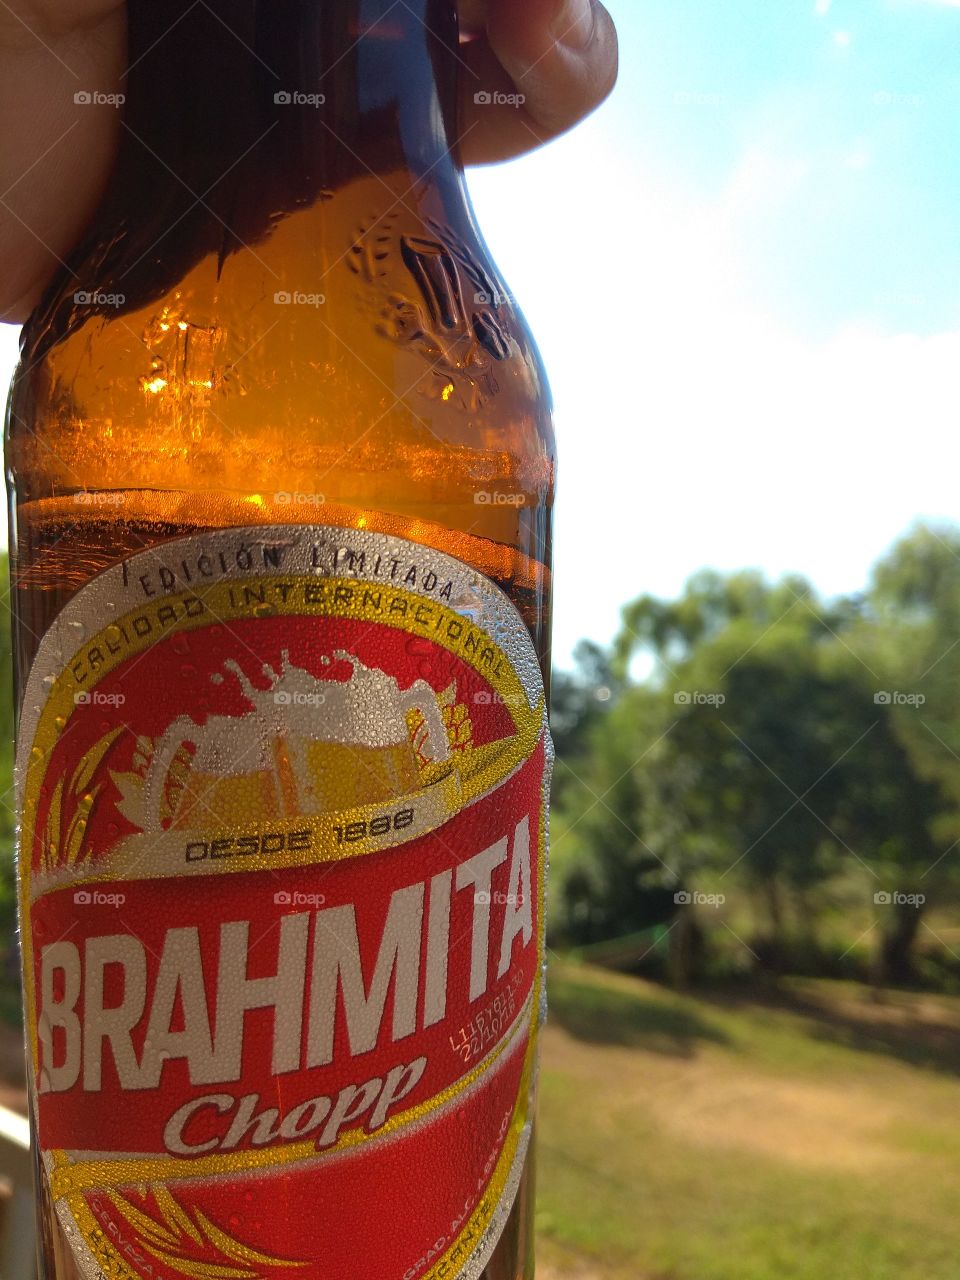 Somente uma Brahma para refrescar esse verão no Paraguai.